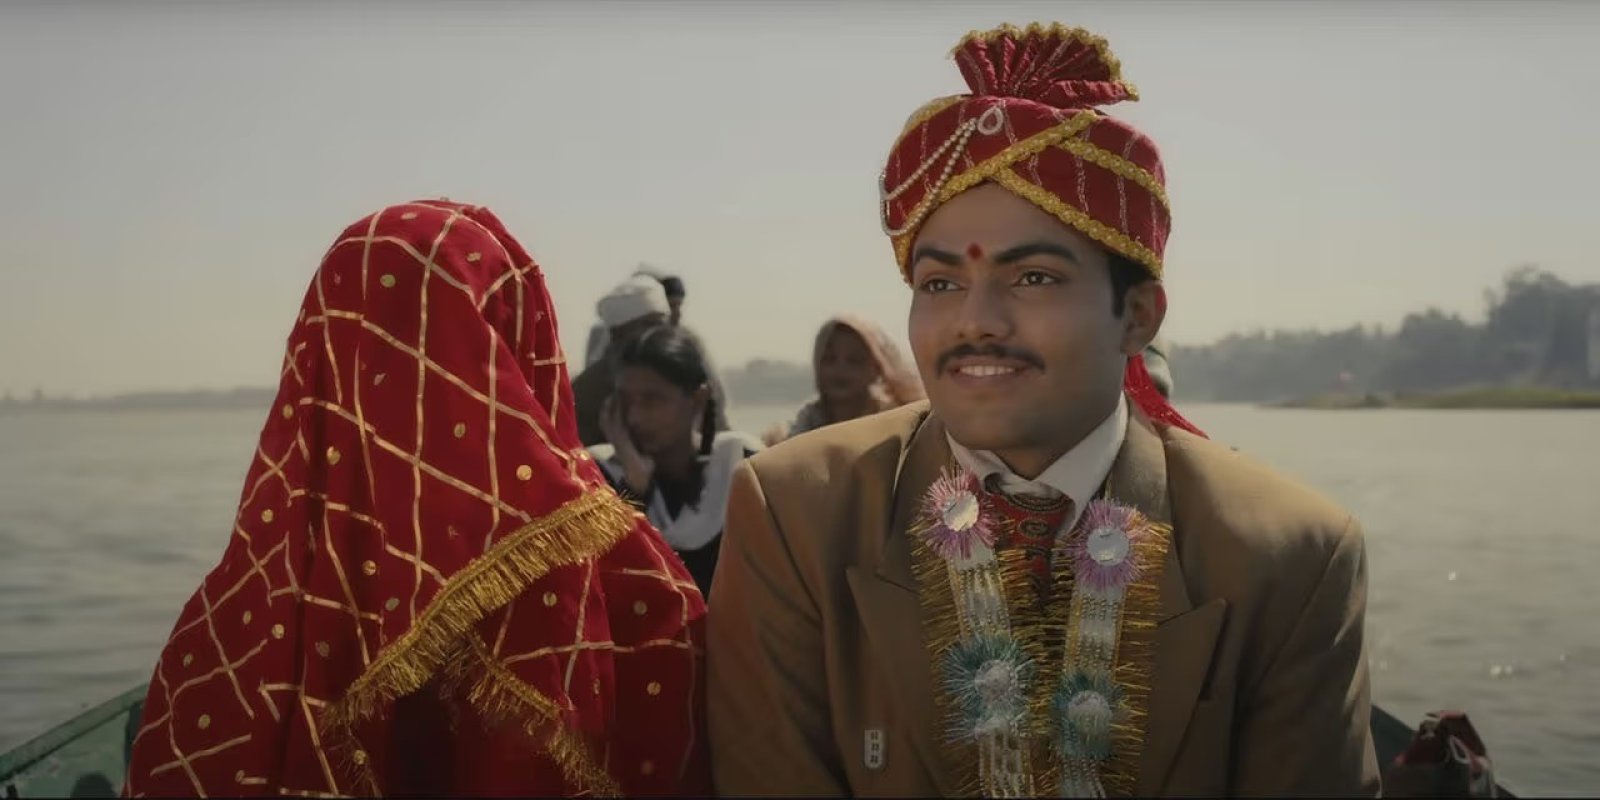 किरण राव की 'लापता लेडीज' - भारत की संस्कृति का जश्न मनाने वाली फिल्म का भोपाल में ग्रैंड होगा प्रीमियर